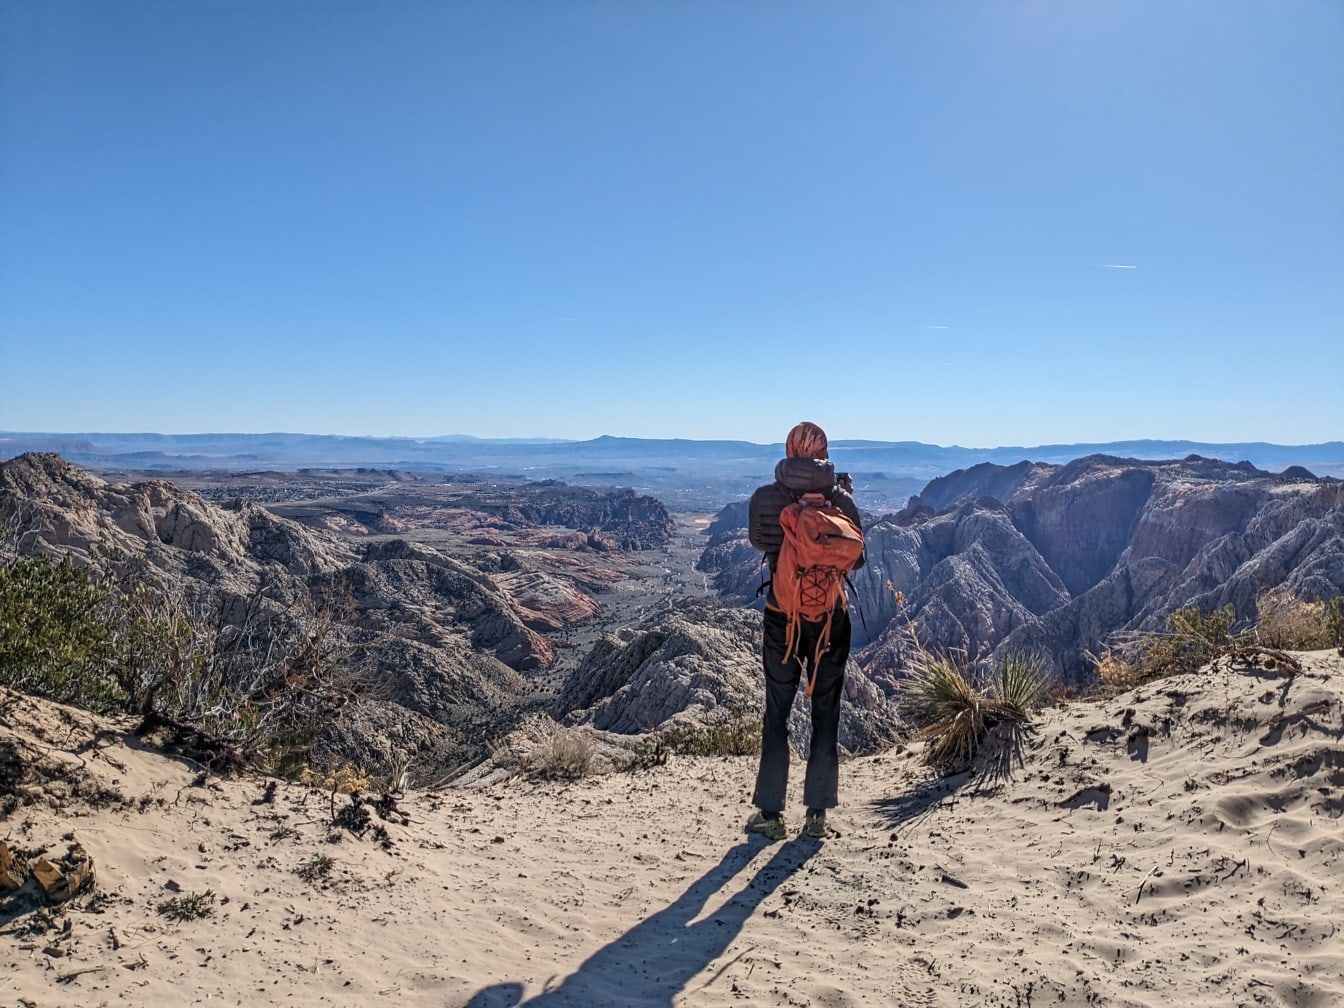 Excursionista mochilero de pie en un acantilado del desierto y disfrutando del panorama del valle desértico